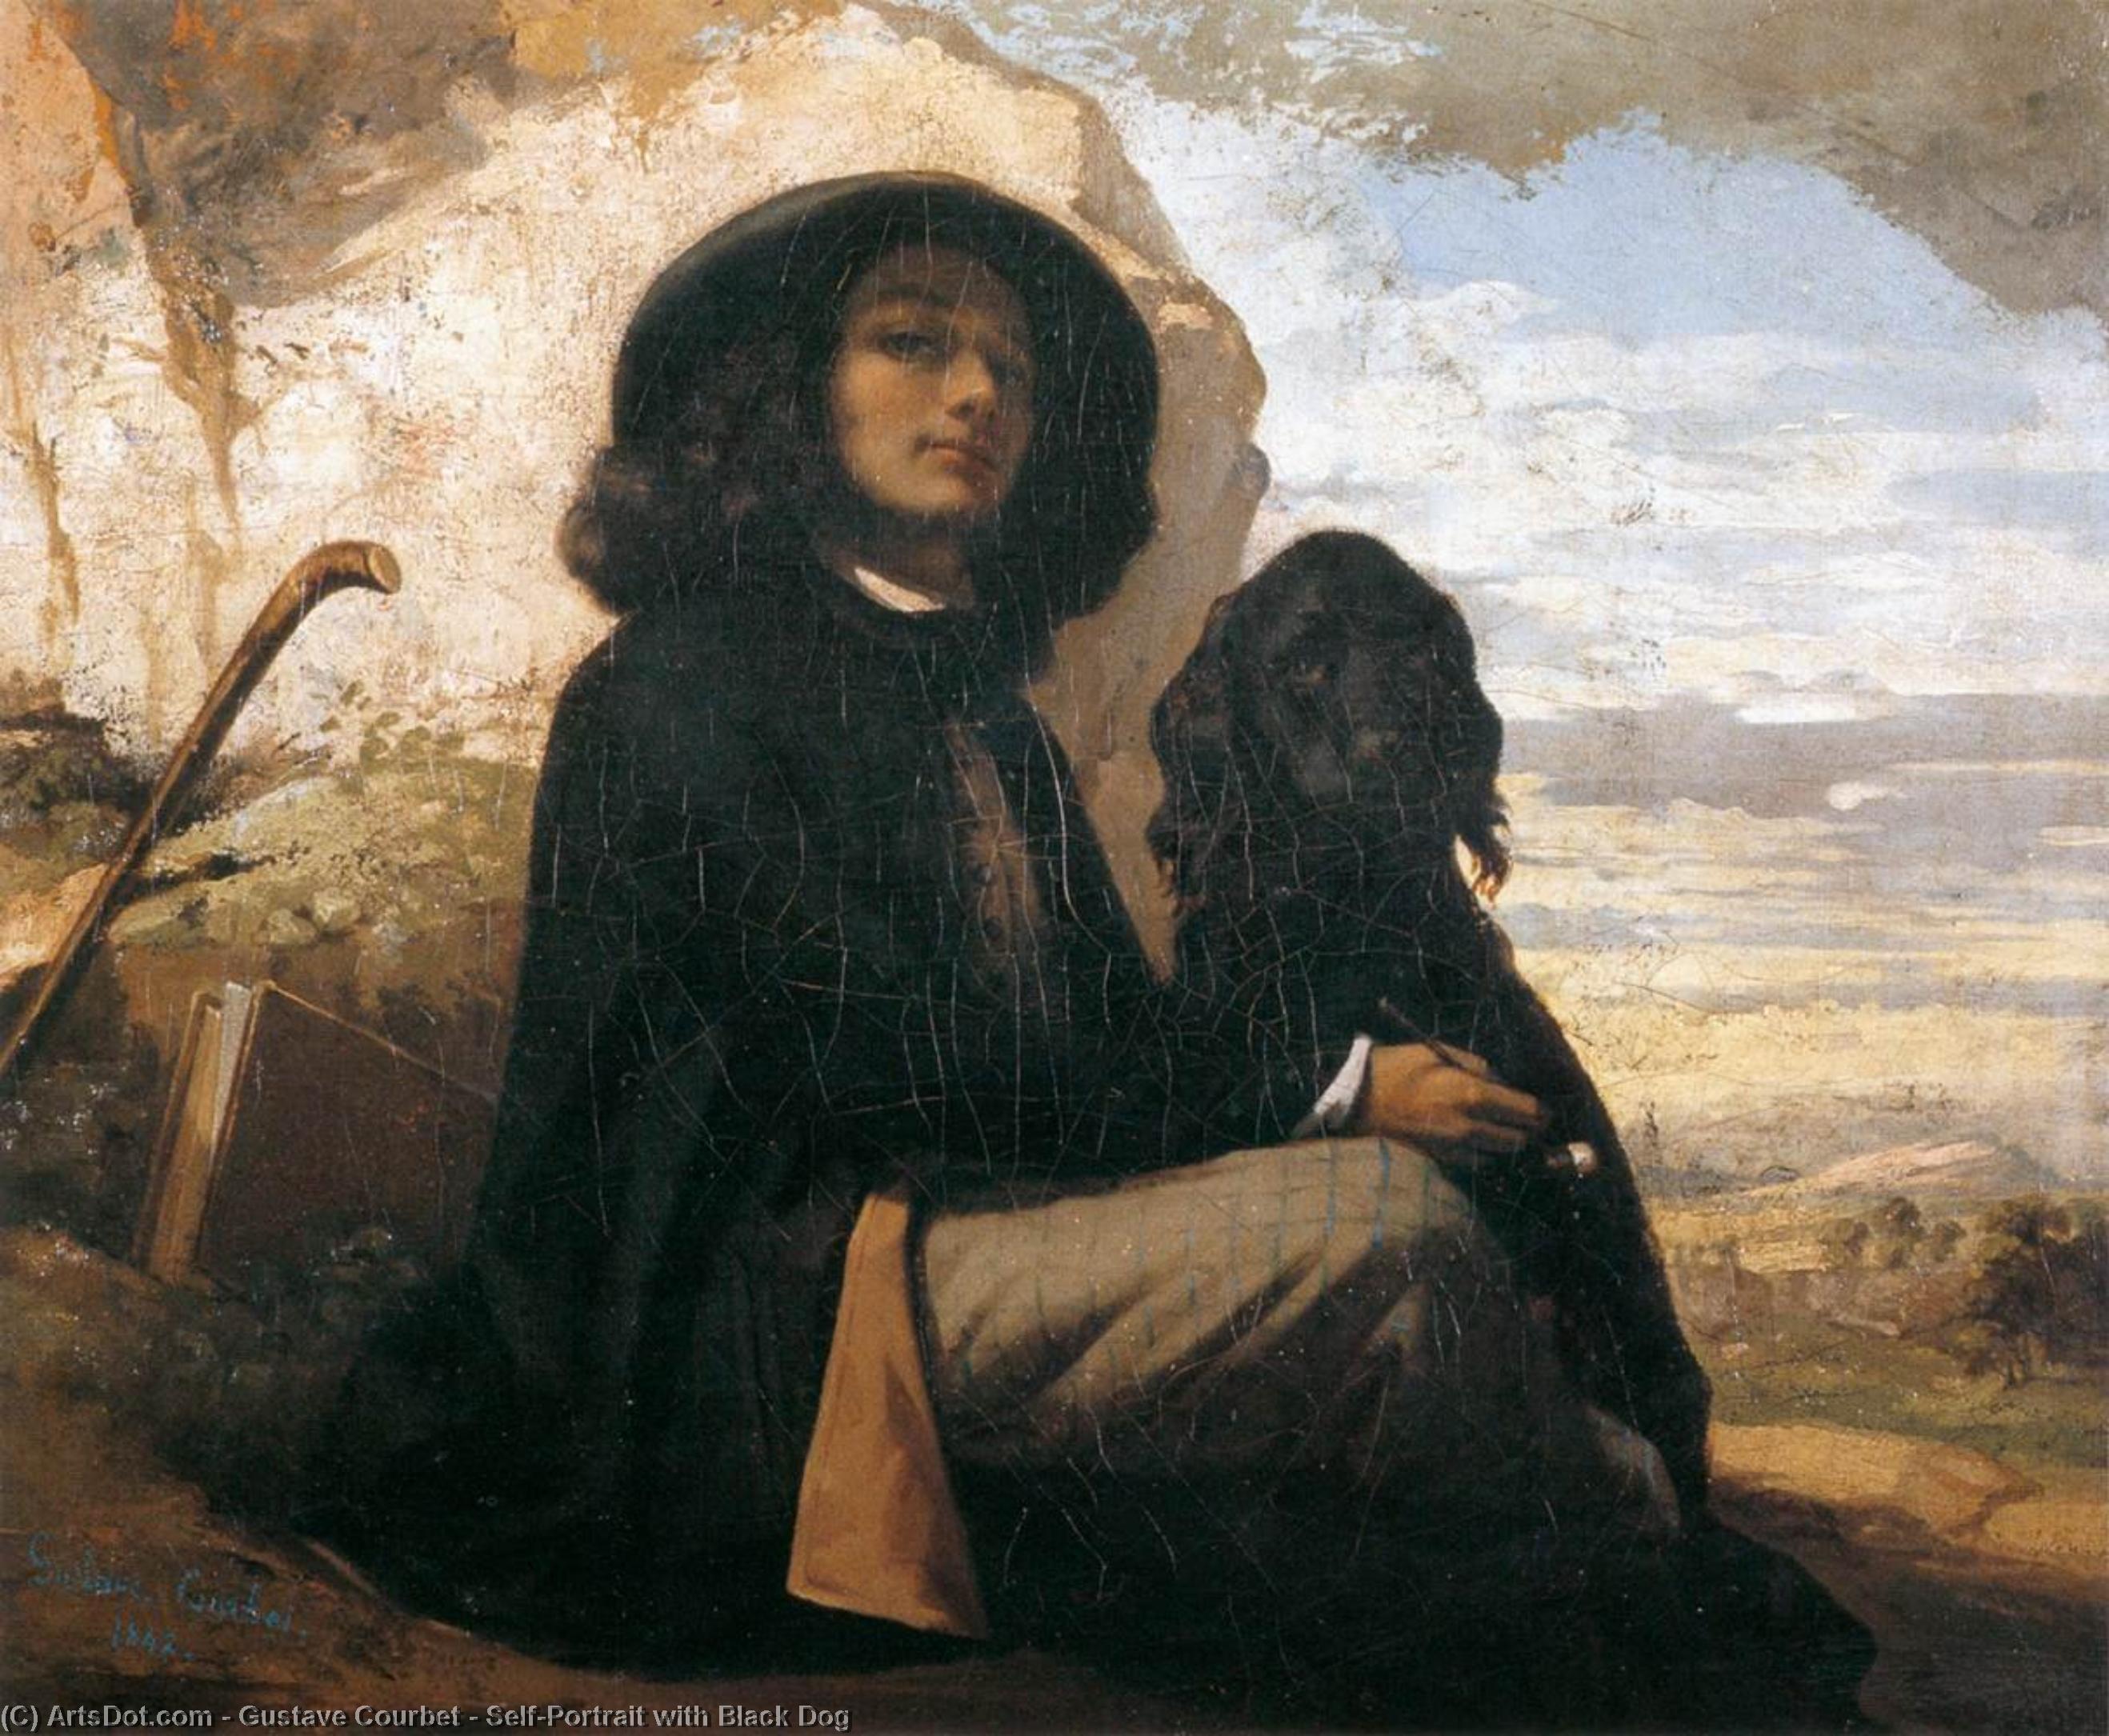 Compre Museu De Reproduções De Arte Auto-retrato com cão preto, 1842 por Gustave Courbet (1819-1877, France) | ArtsDot.com